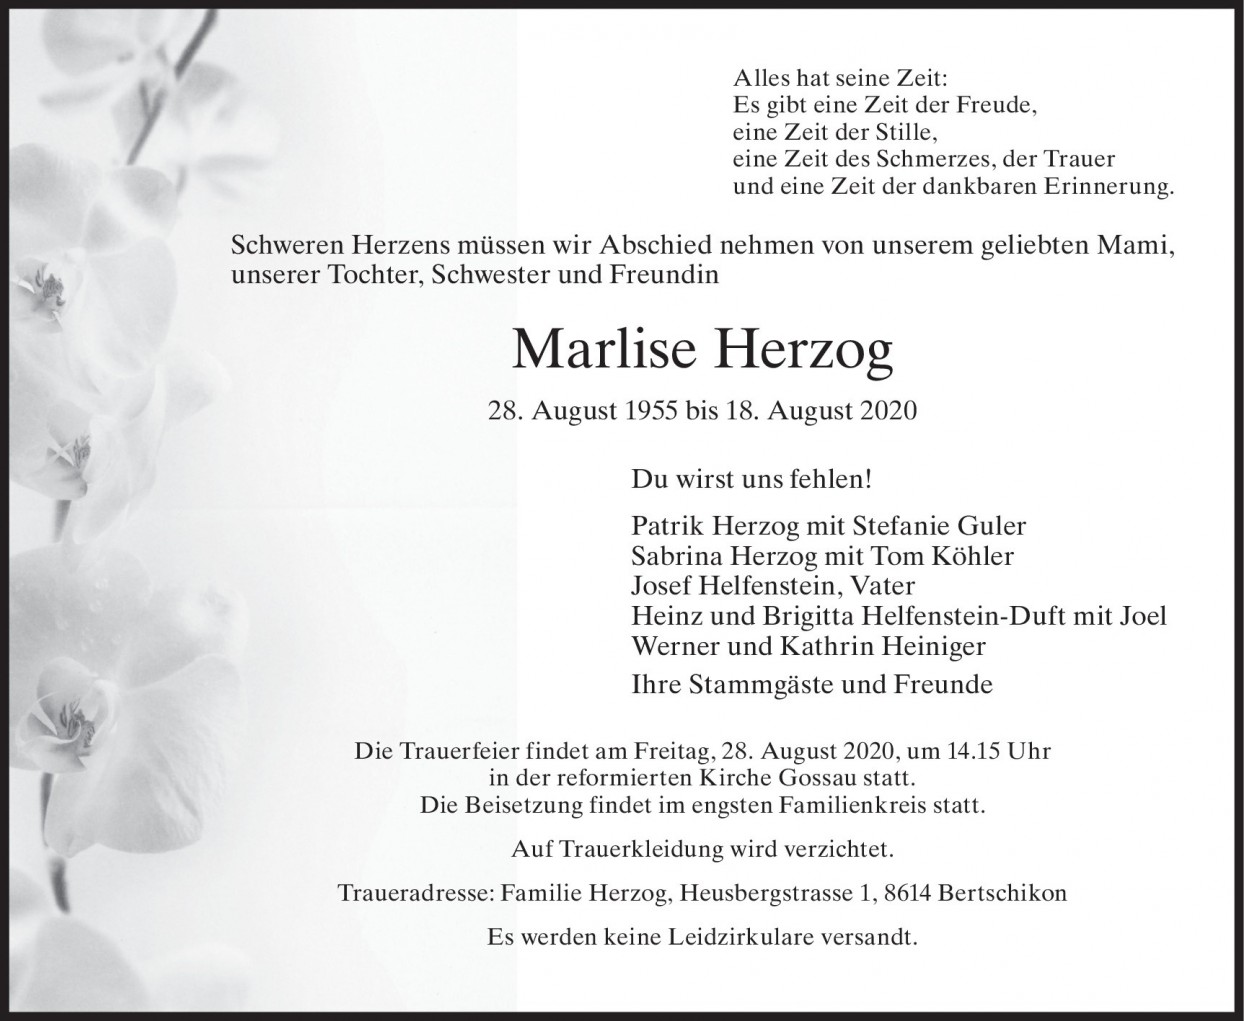 Marlise Herzog